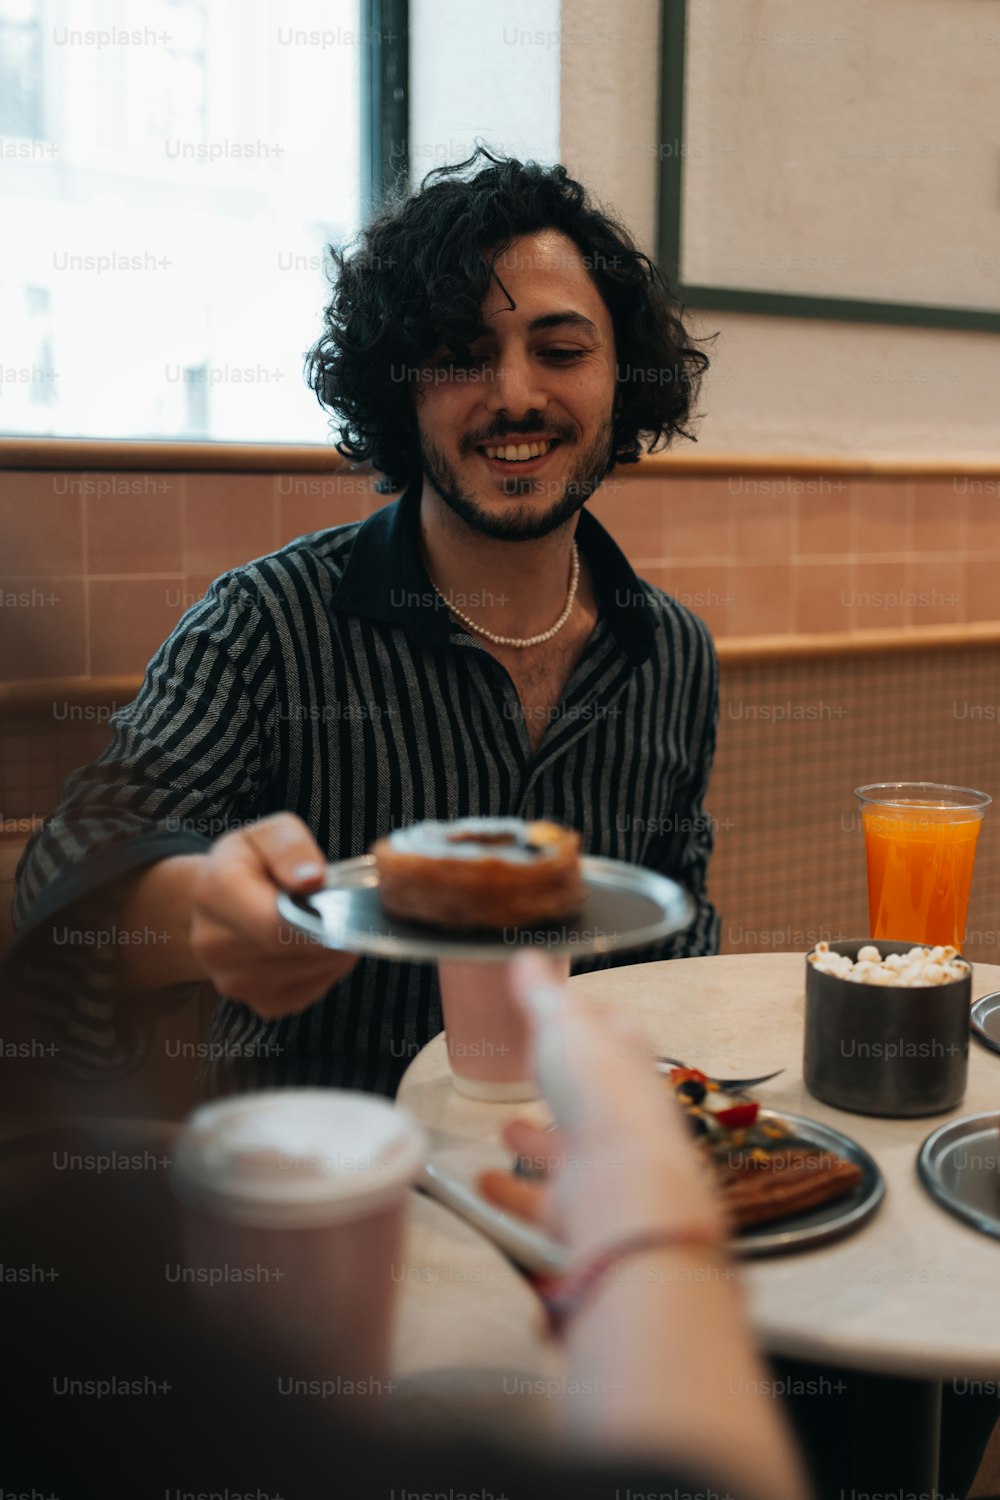 Ein Mann sitzt an einem Tisch mit einem Teller Essen